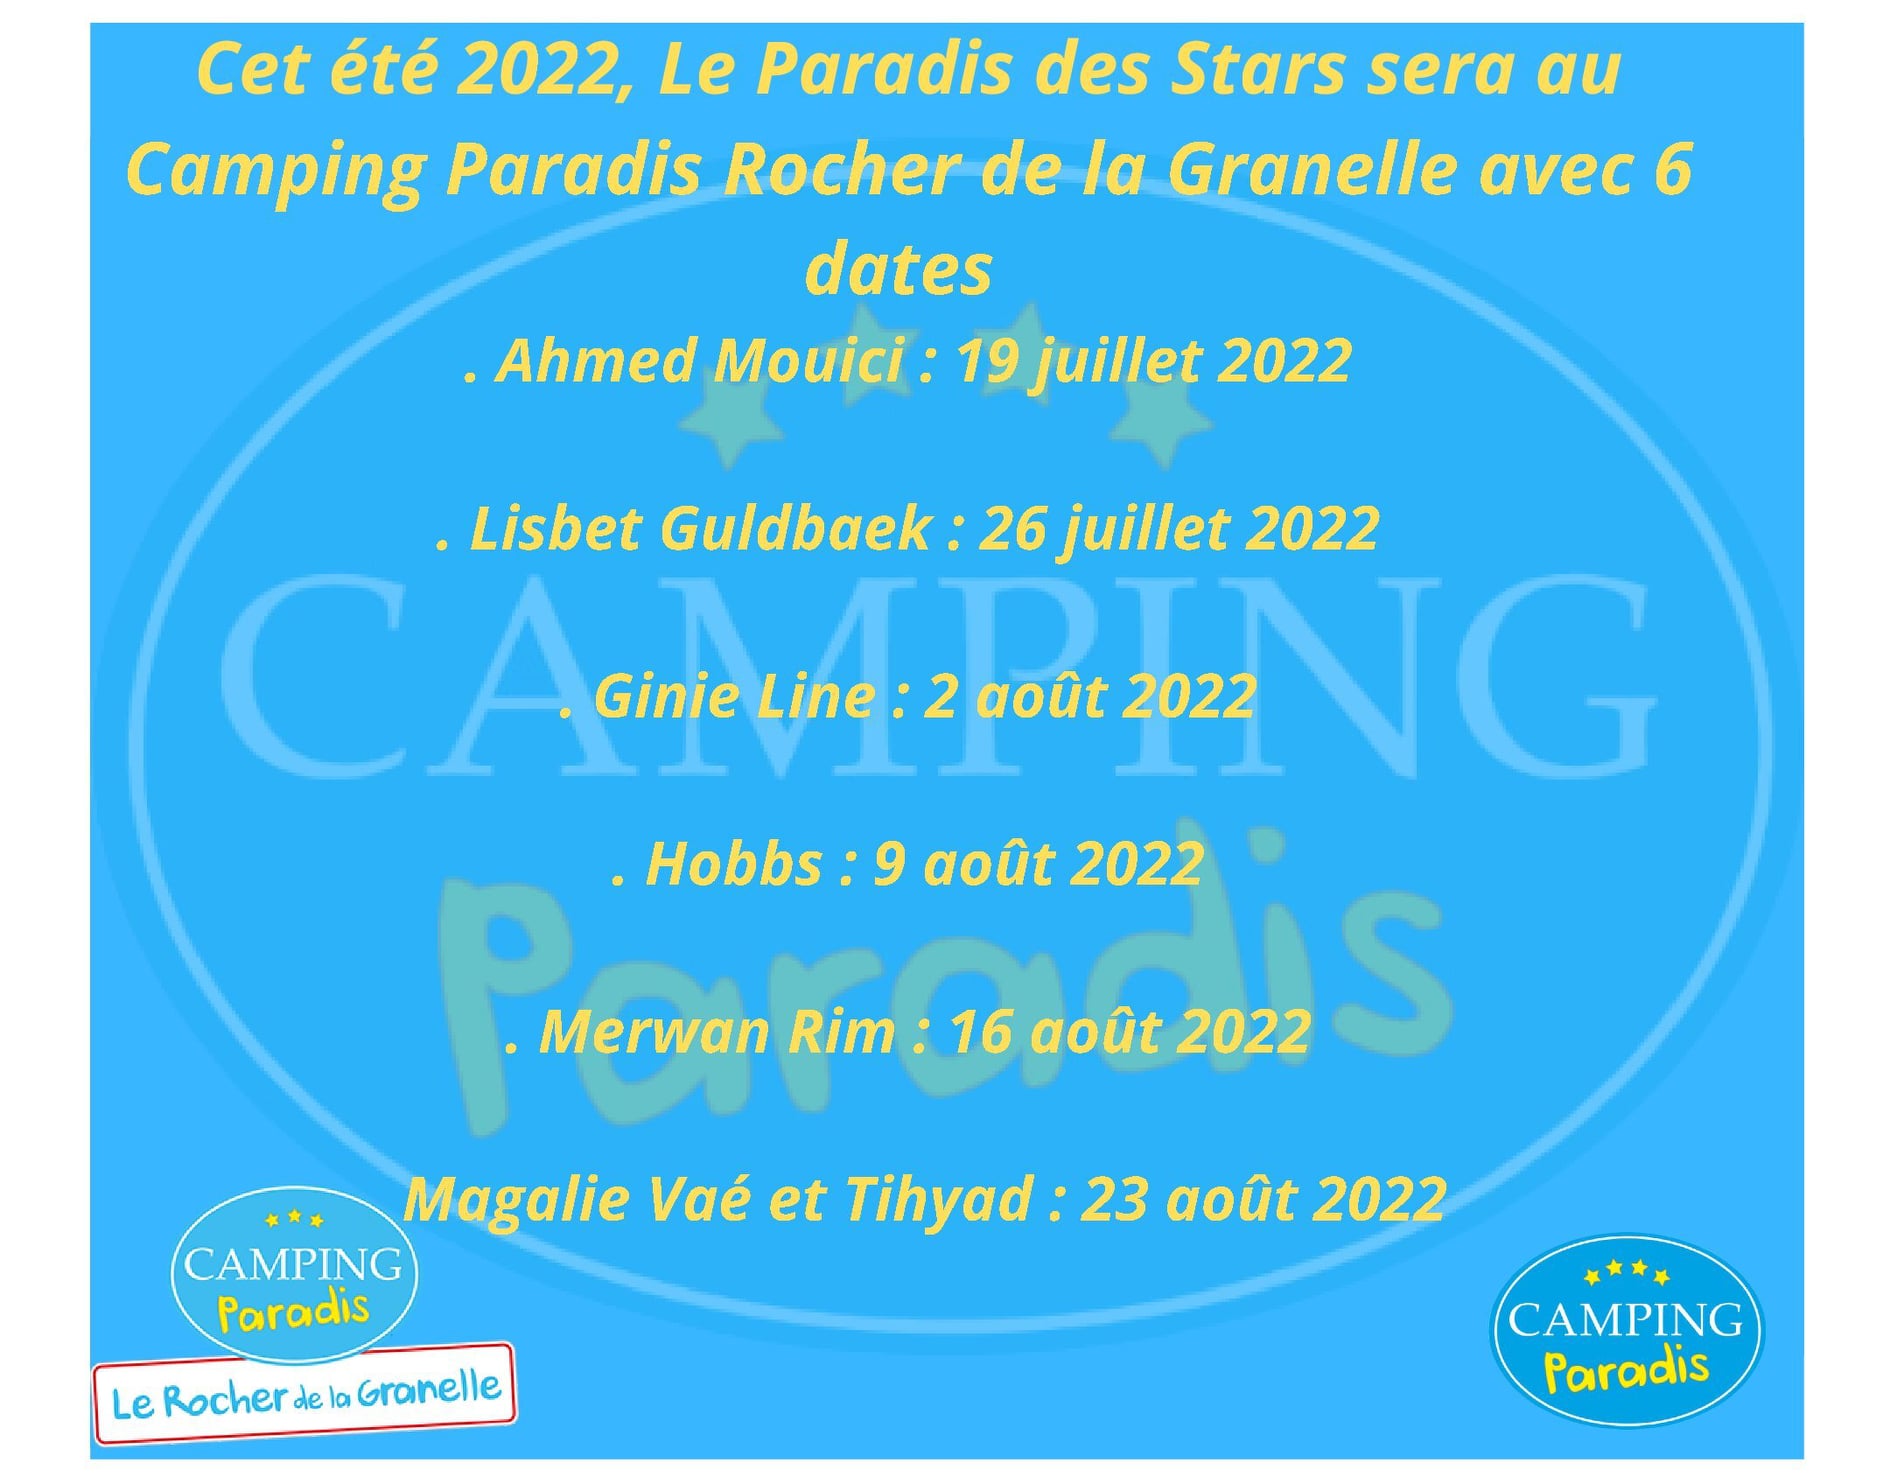 2022 stars'schedule